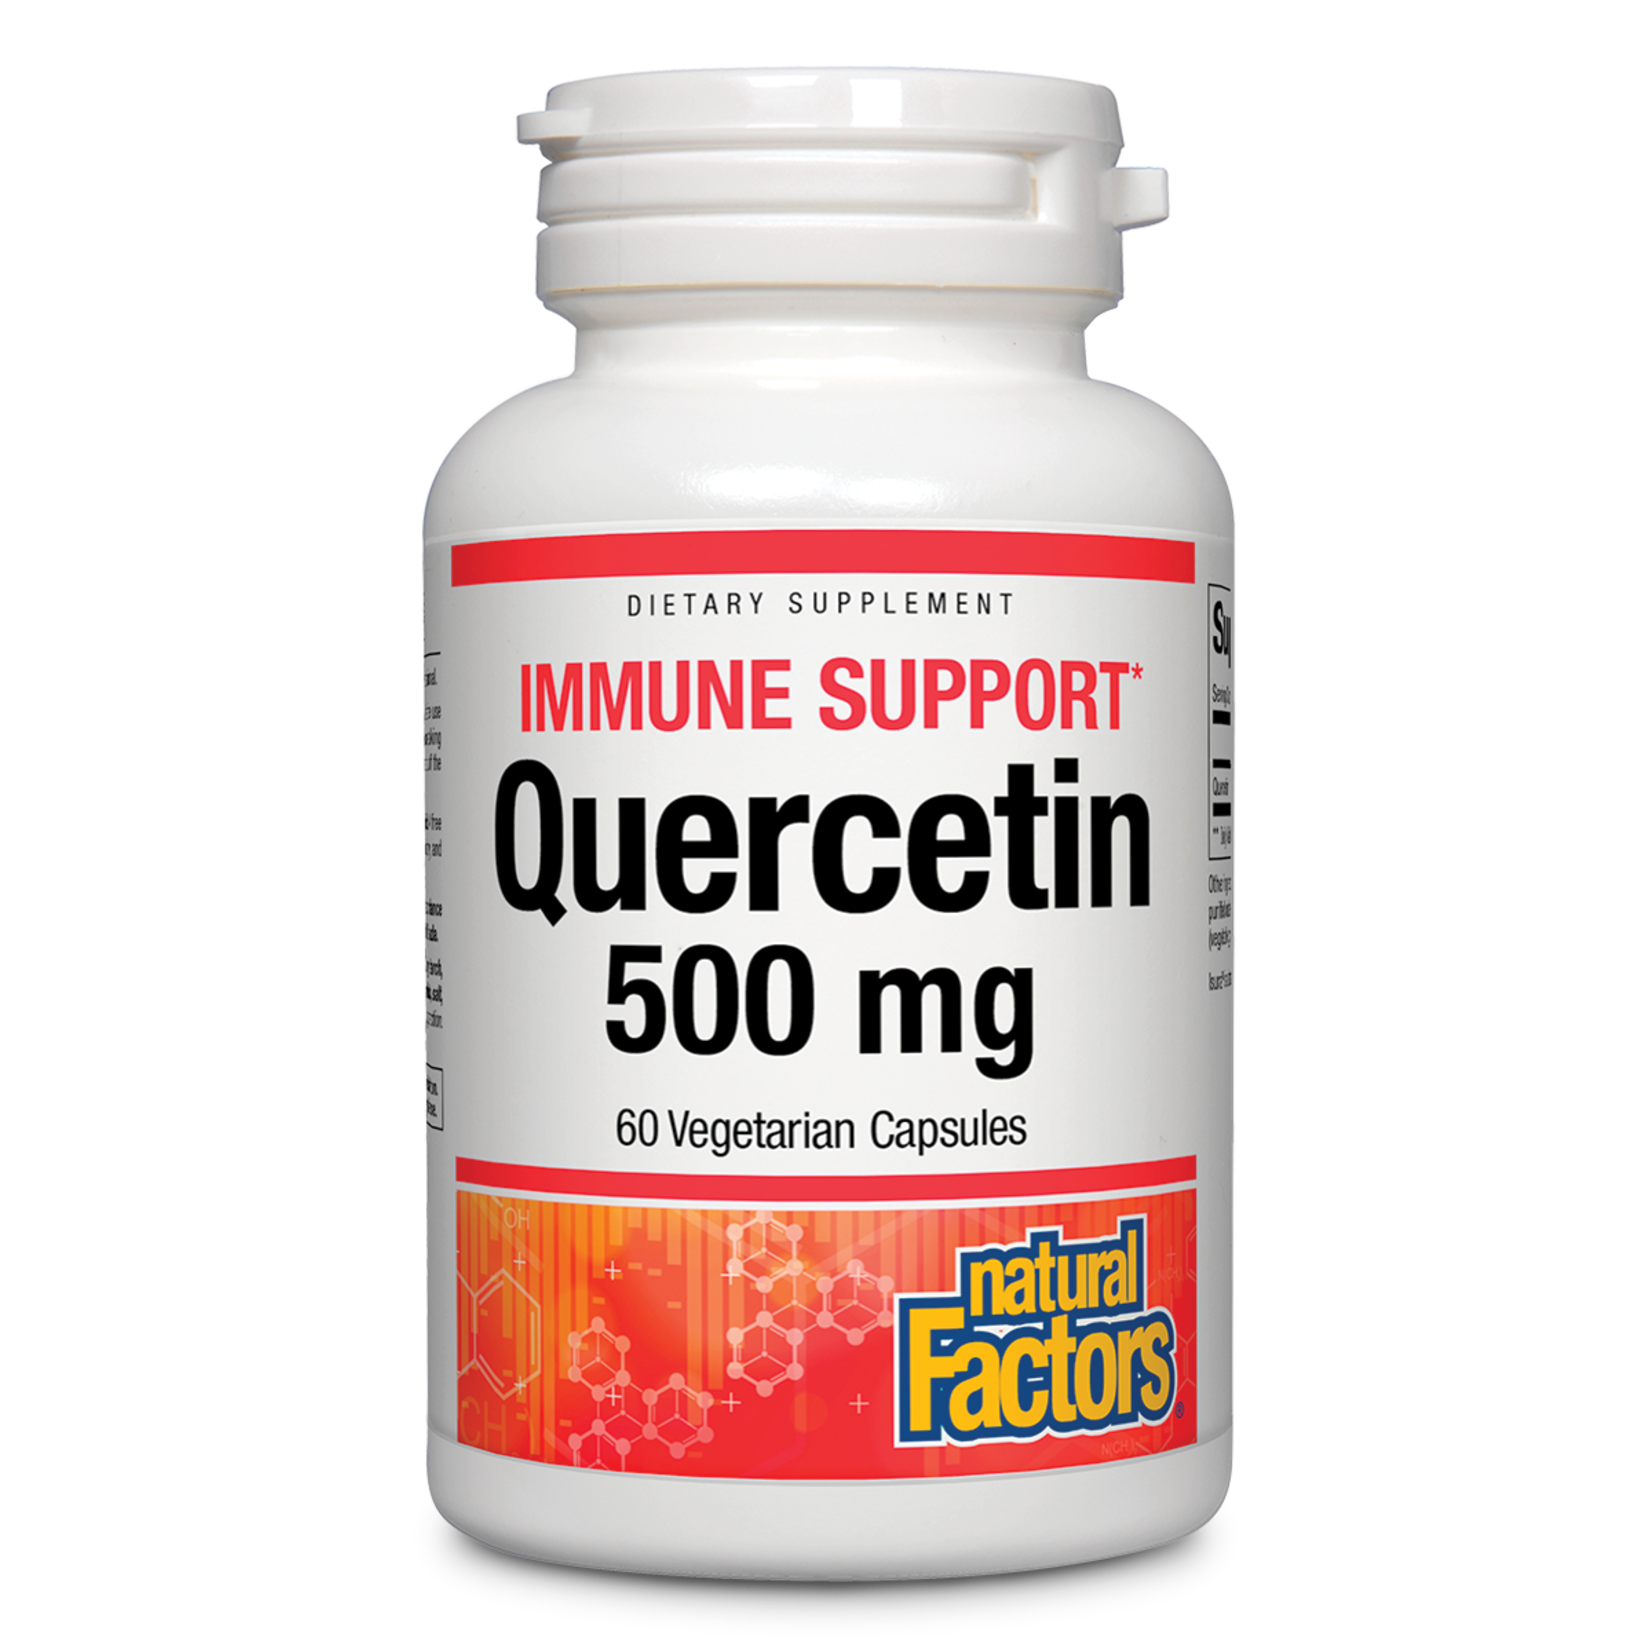 Natural Factors Natural Factors - Quercetin 500 mg - 60 Veg Capsules